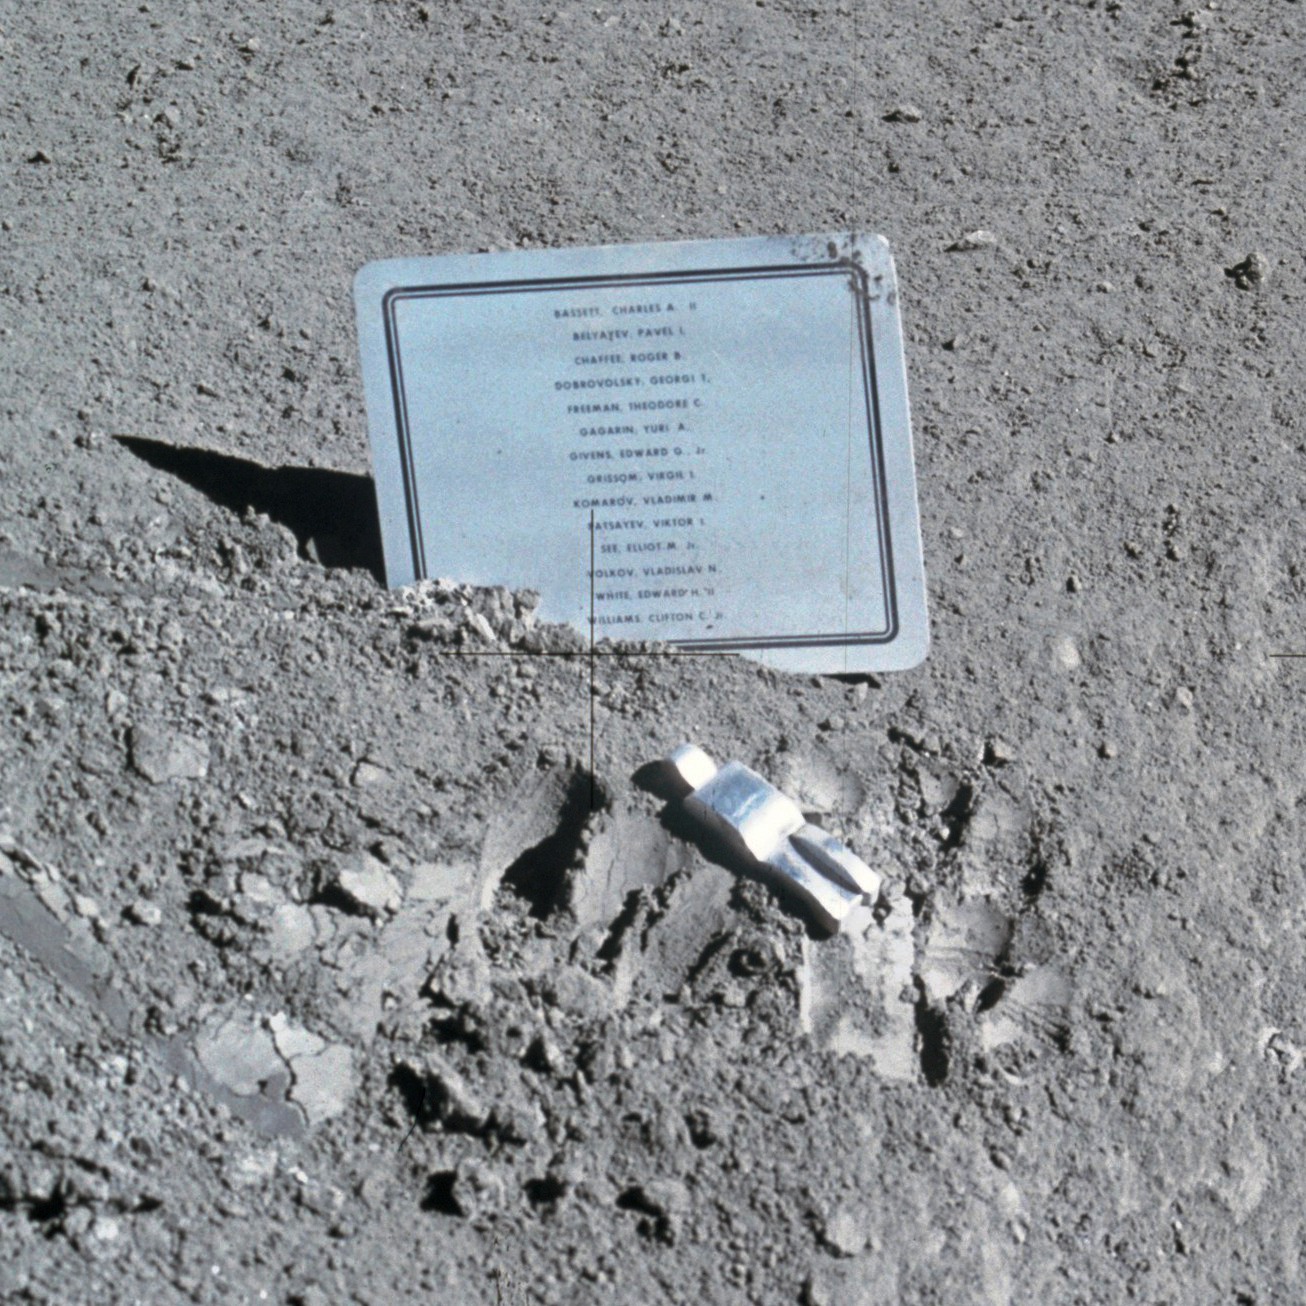 David Scott pozostawił na Księżycu tabliczkę upamiętniającą poległych astronautów. Nazwisko Grissoma jest ósme od góry.